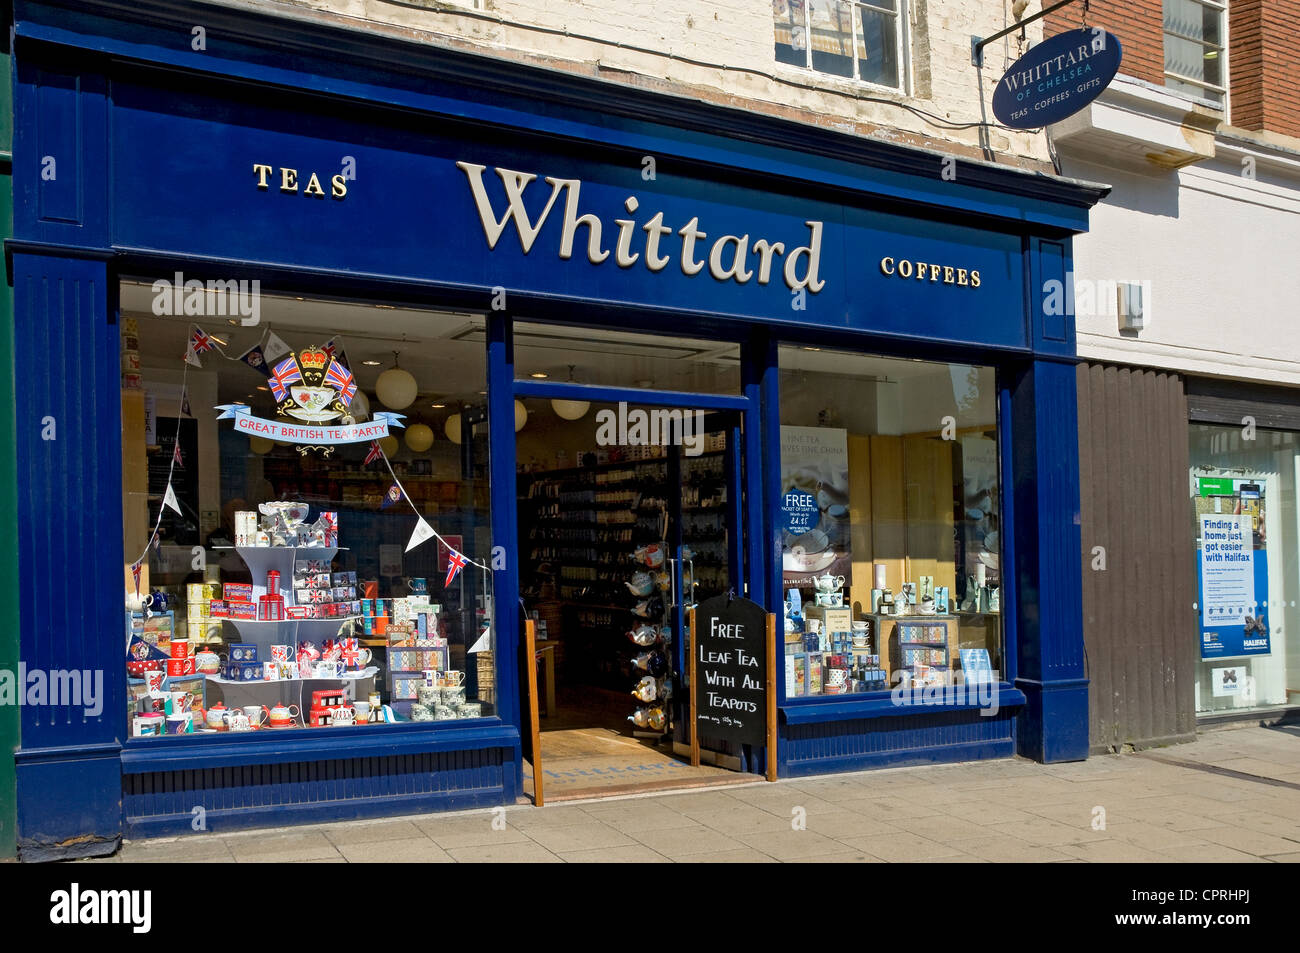 Whittard Teas et cafés magasin de thé York North Yorkshire Angleterre Royaume-Uni Grande-Bretagne Banque D'Images